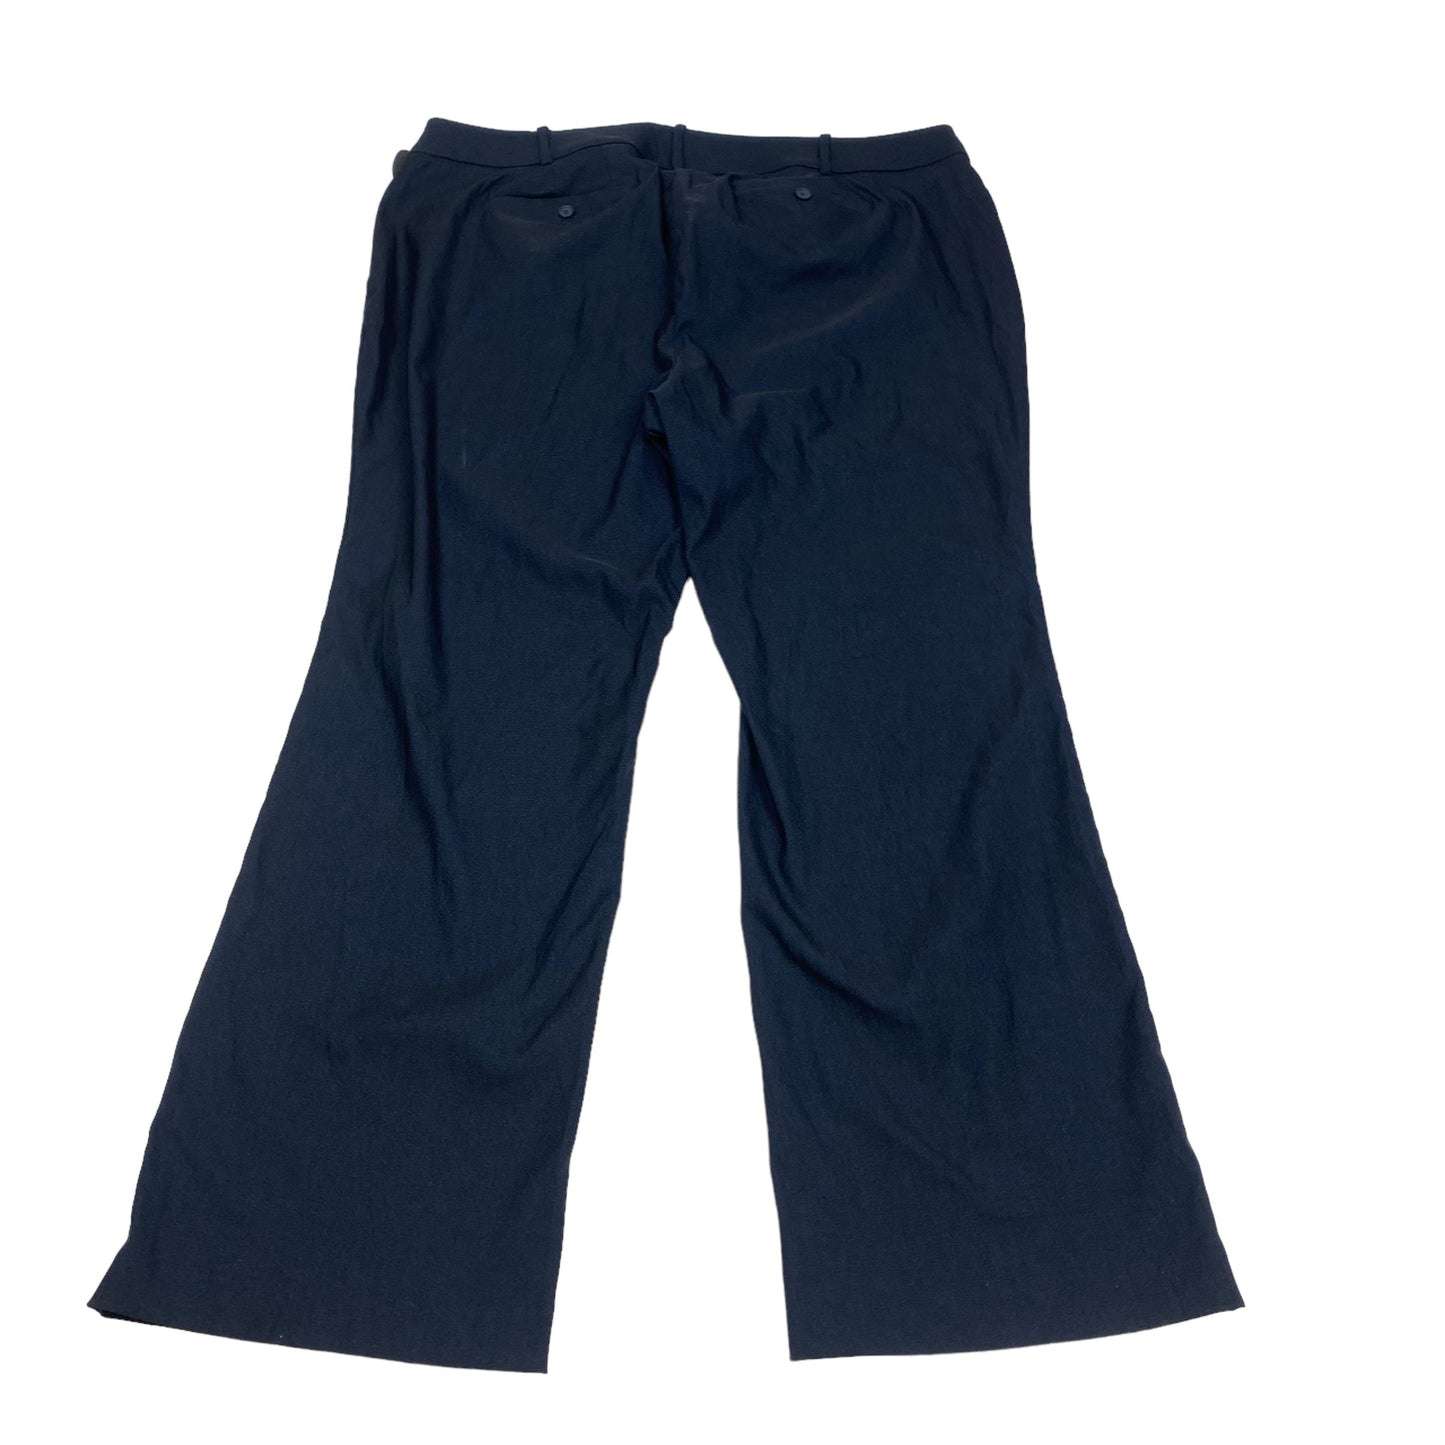 Blue Pants Dress Lane Bryant, Size 24